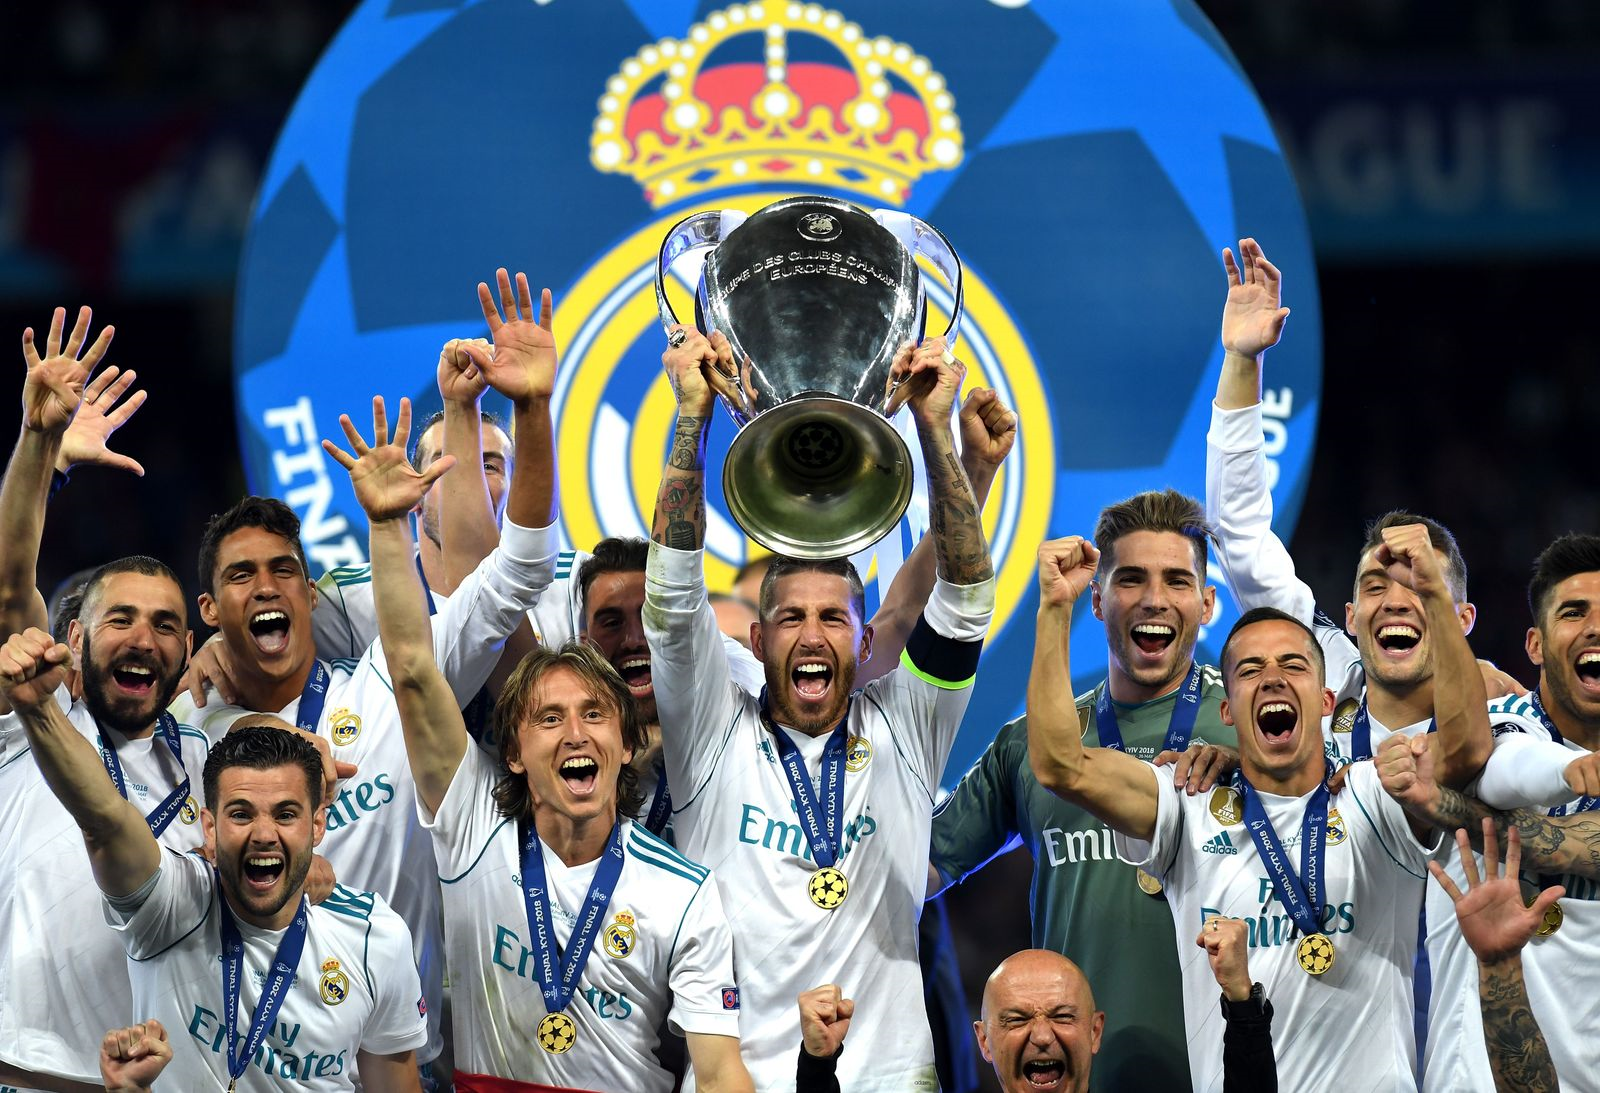 Молодежная лига чемпионов. Реал Мадрид победитель Лиги чемпионов. Реал Мадрид чемпион Лиги чемпионов. Реал Мадрид чемпион Лиги чемпионов 2018. Реал Мадрид победитель Лиги чемпионов 2017.